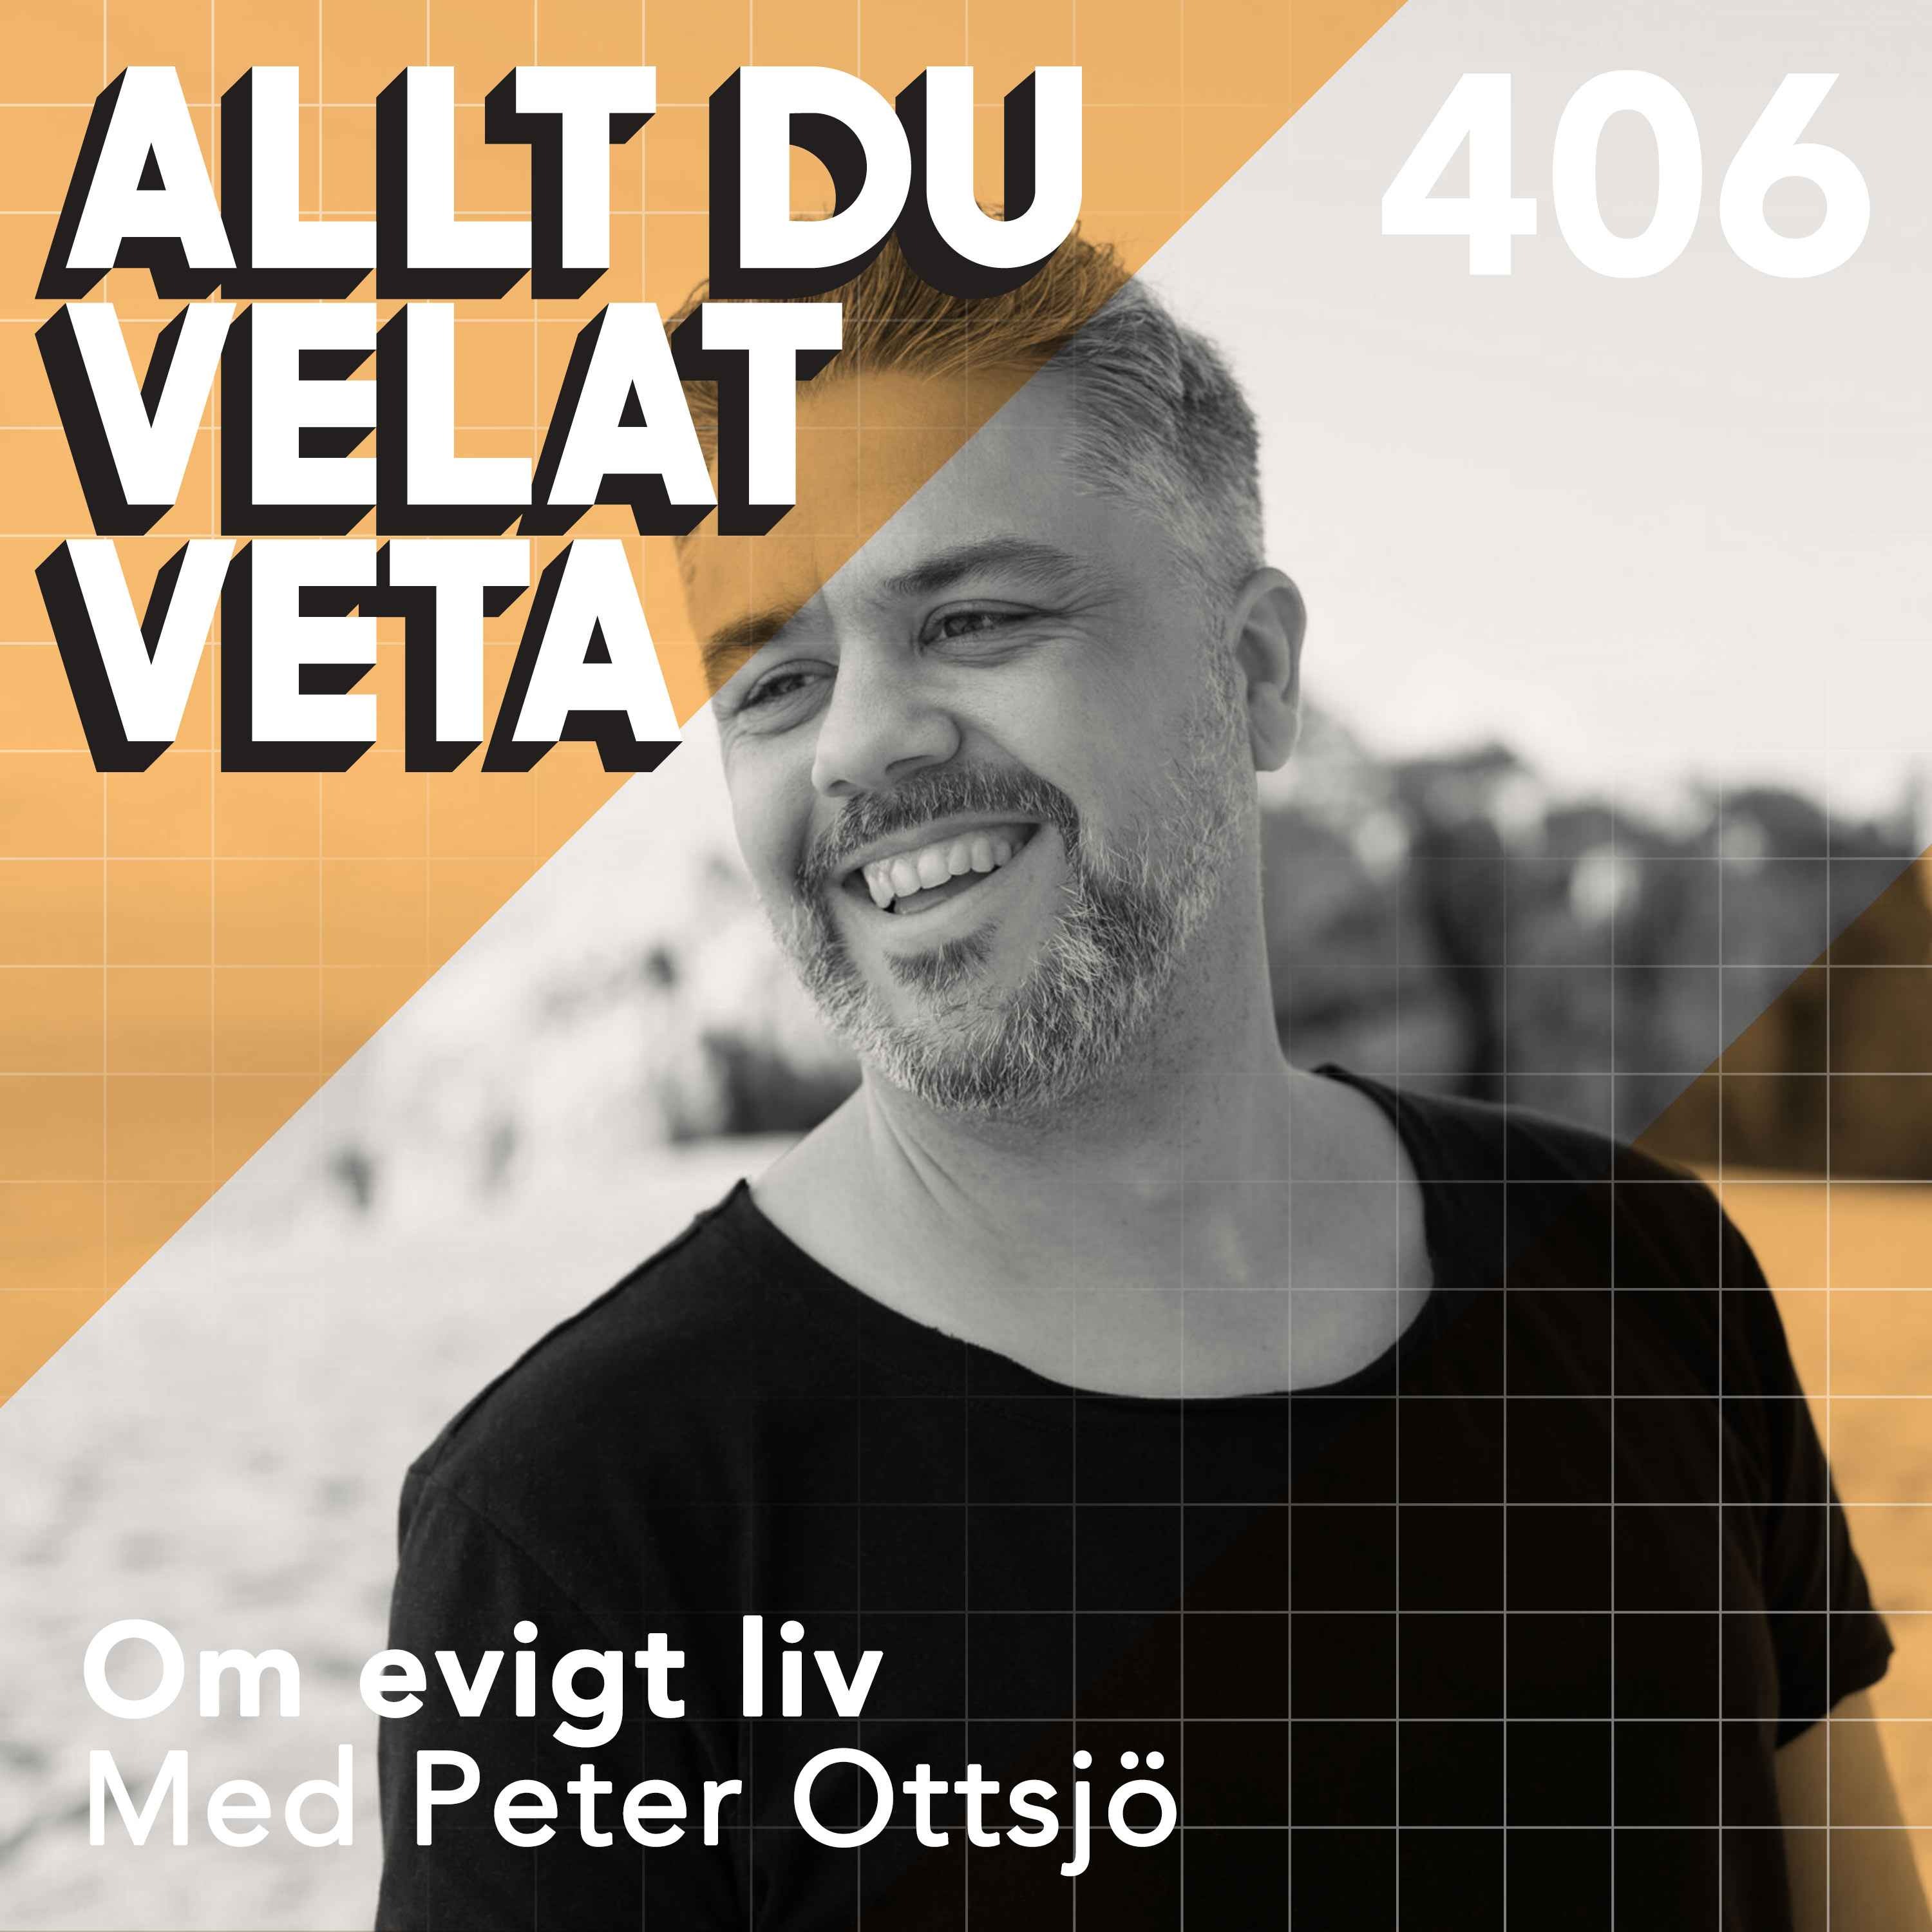 406 Om evigt liv med Peter Ottsjö